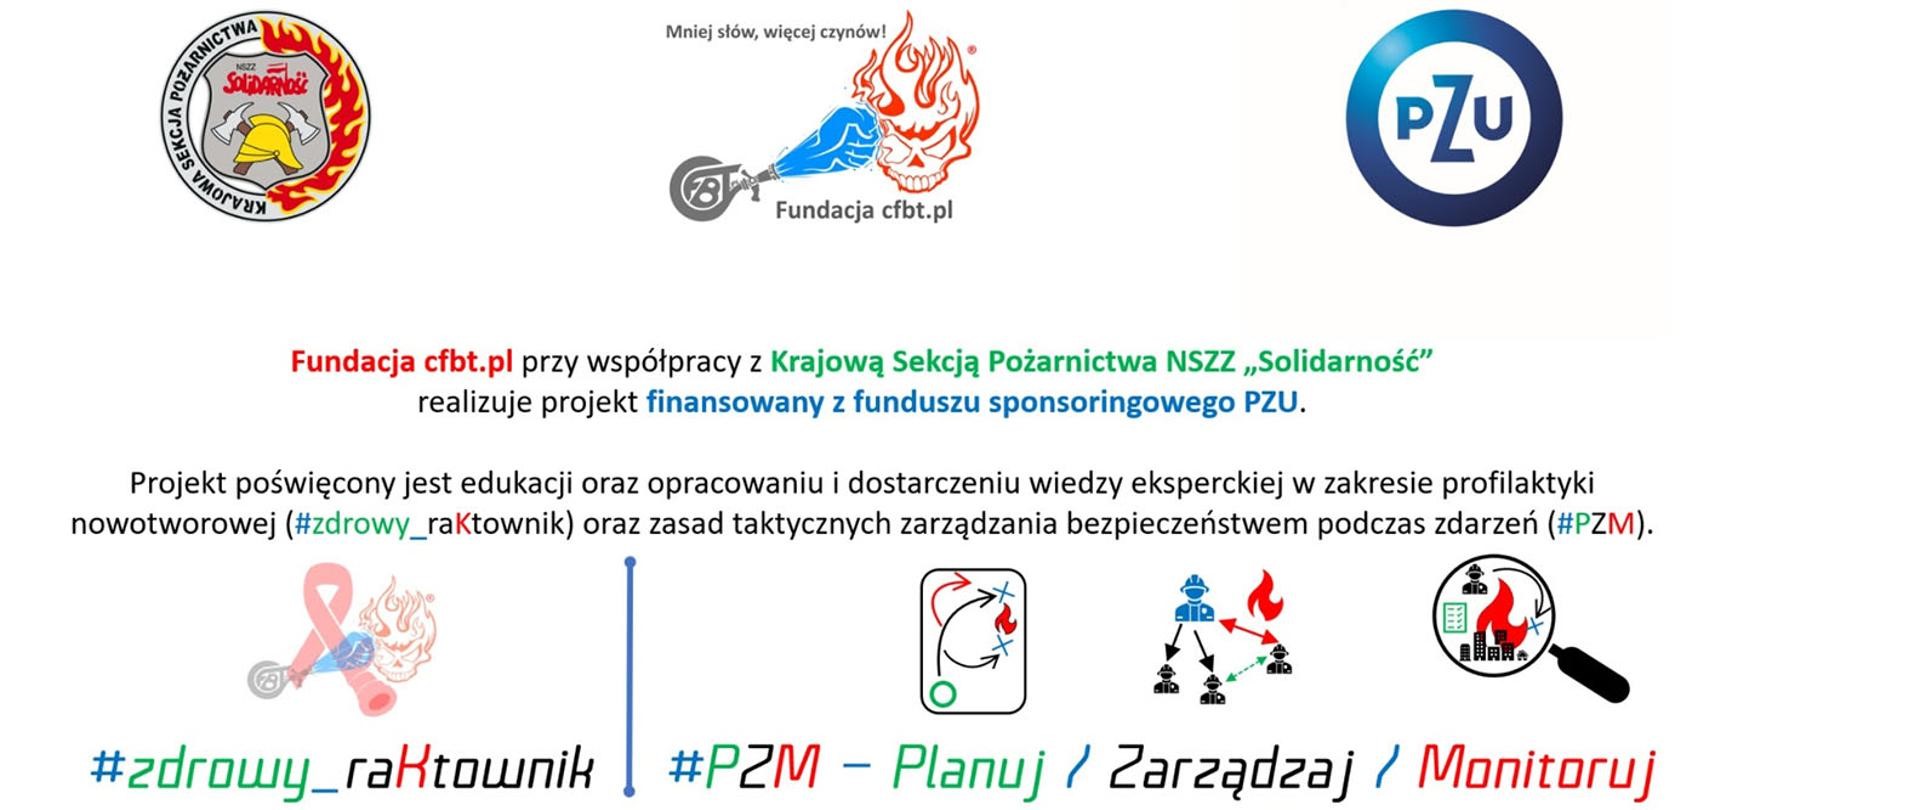 Baner informacyjny szkolenia "Planuj/Zarządzaj/Monitoruj (#PZM)". U góry po lewej logo Krajowej Sekcji Pożarnictwa "Solidarność", na środku logo Fundacji cfbt.pl, po prawej logo PZU. Poniżej treśc informacyjna